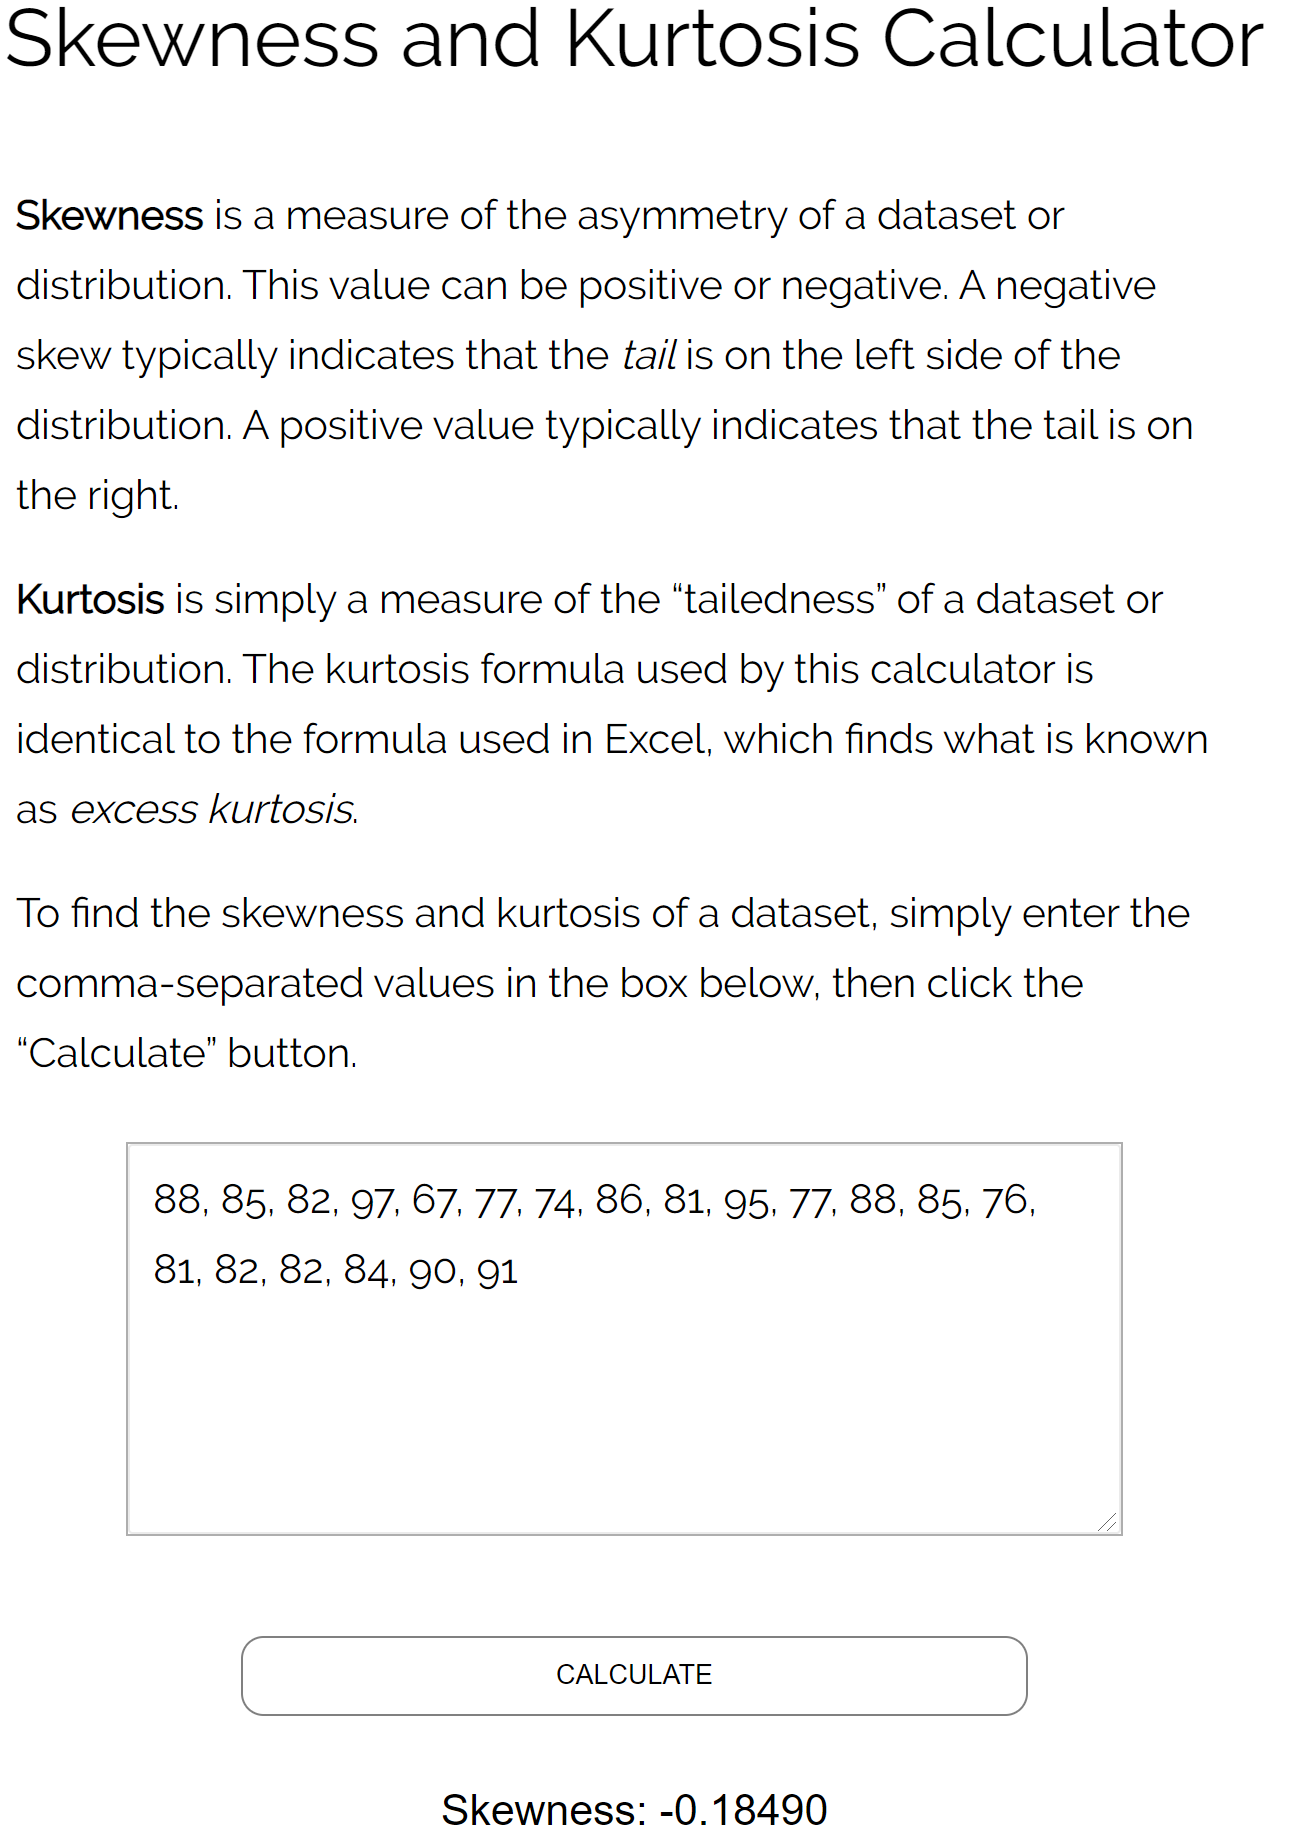 Пример калькулятора асимметрии